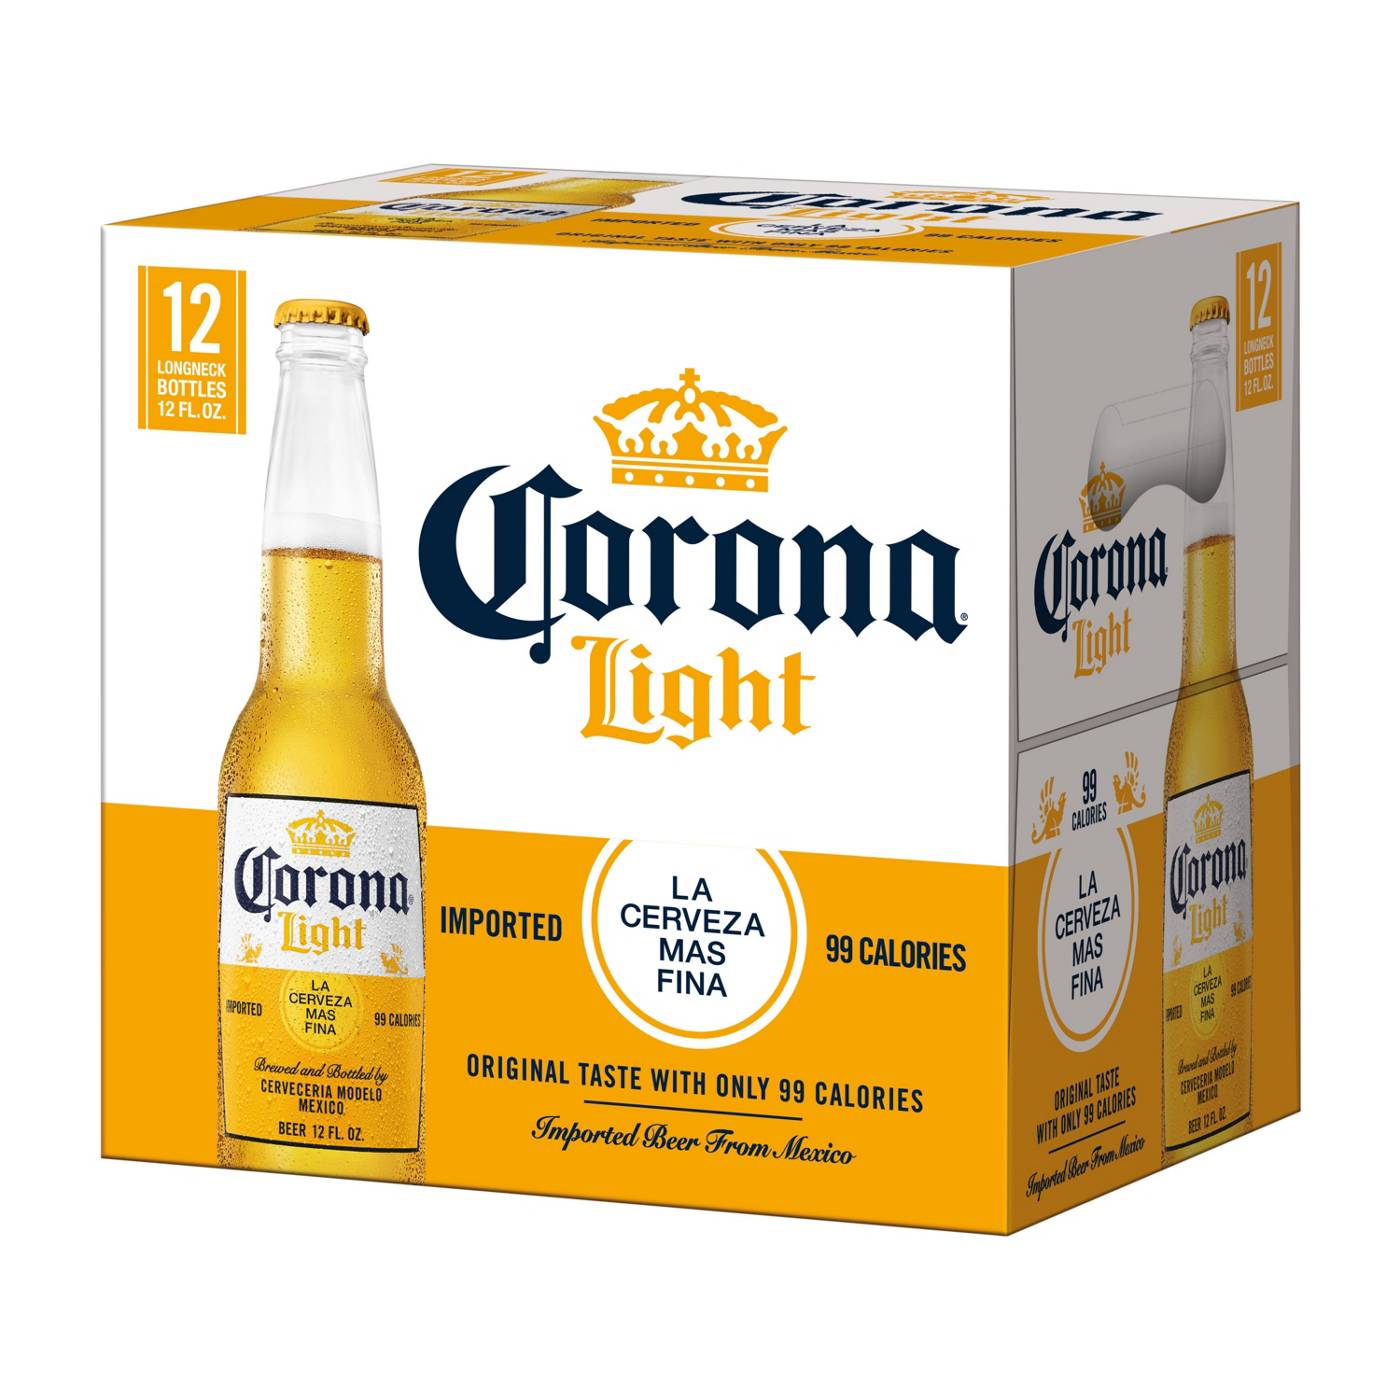 Corona Light Mexican Lager Import Light Beer 12 oz Bottles, 12 pk; image 10 of 10